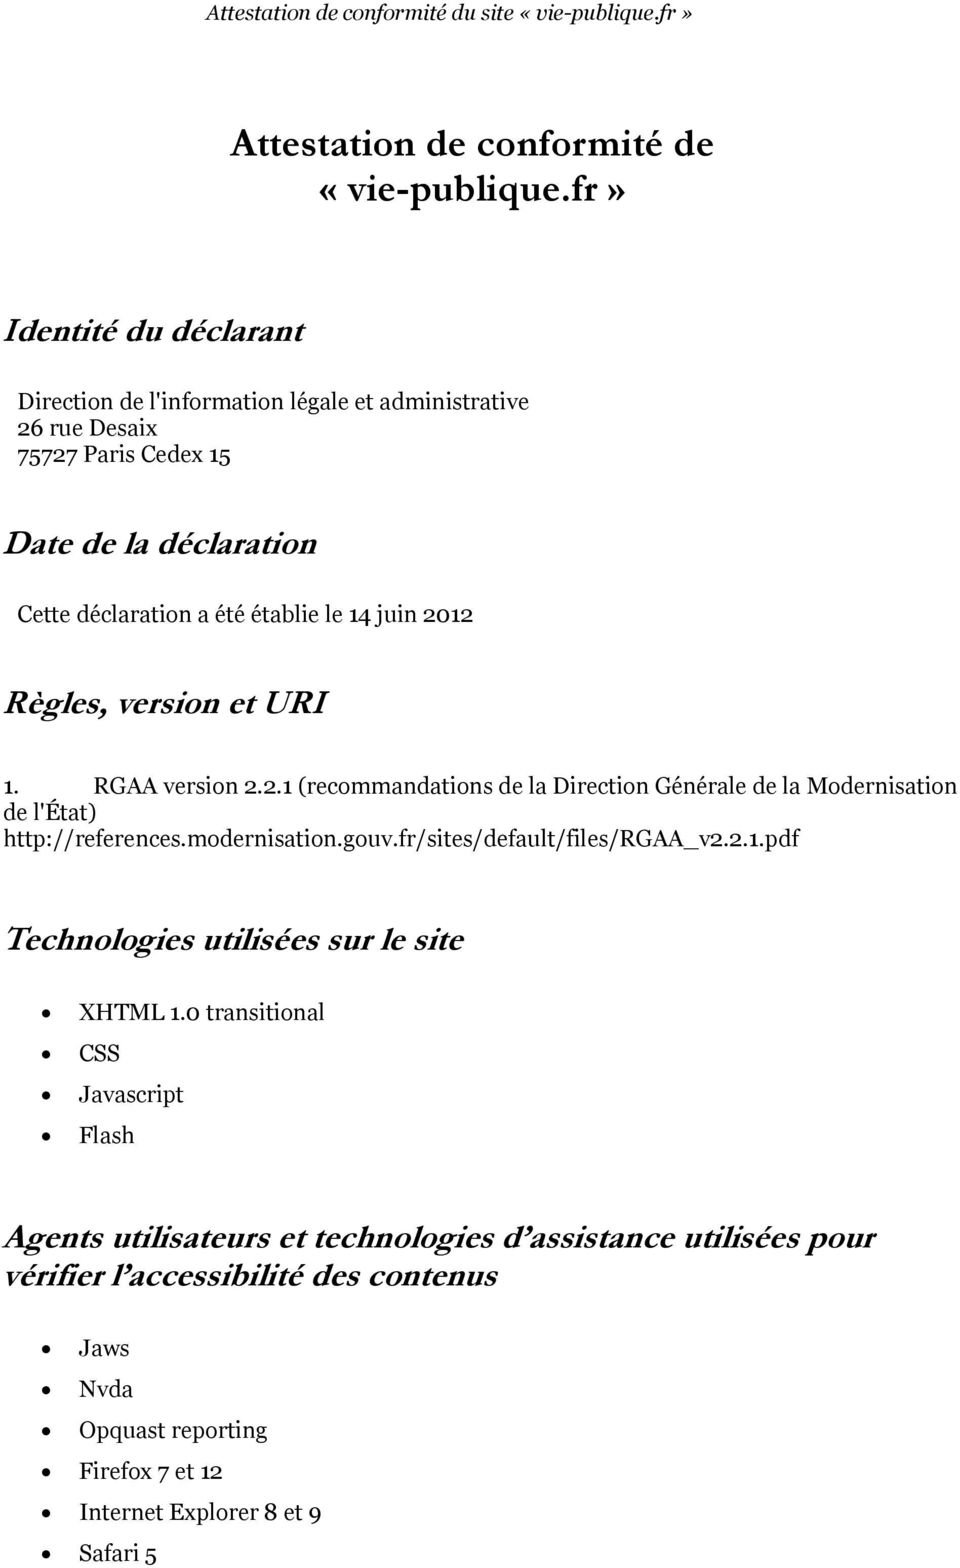 le 14 juin 2012 Règles, version et URI 1. RGAA version 2.2.1 (recommandations de la Direction Générale de la Modernisation de l'état) http://references.modernisation.